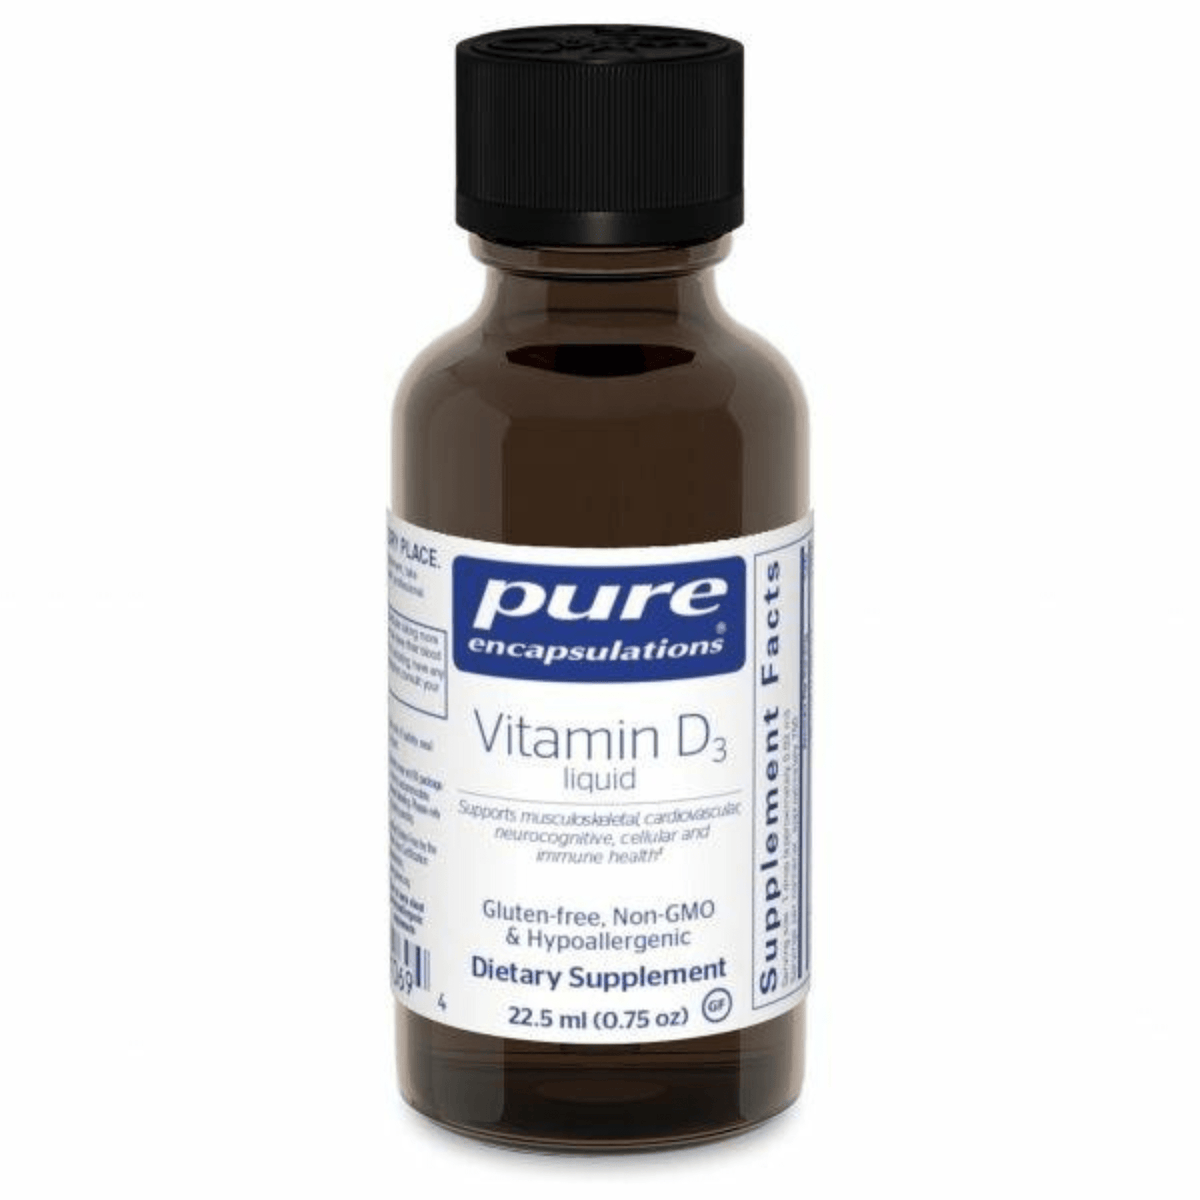 Primary Image of Vitamin D3 Liquid